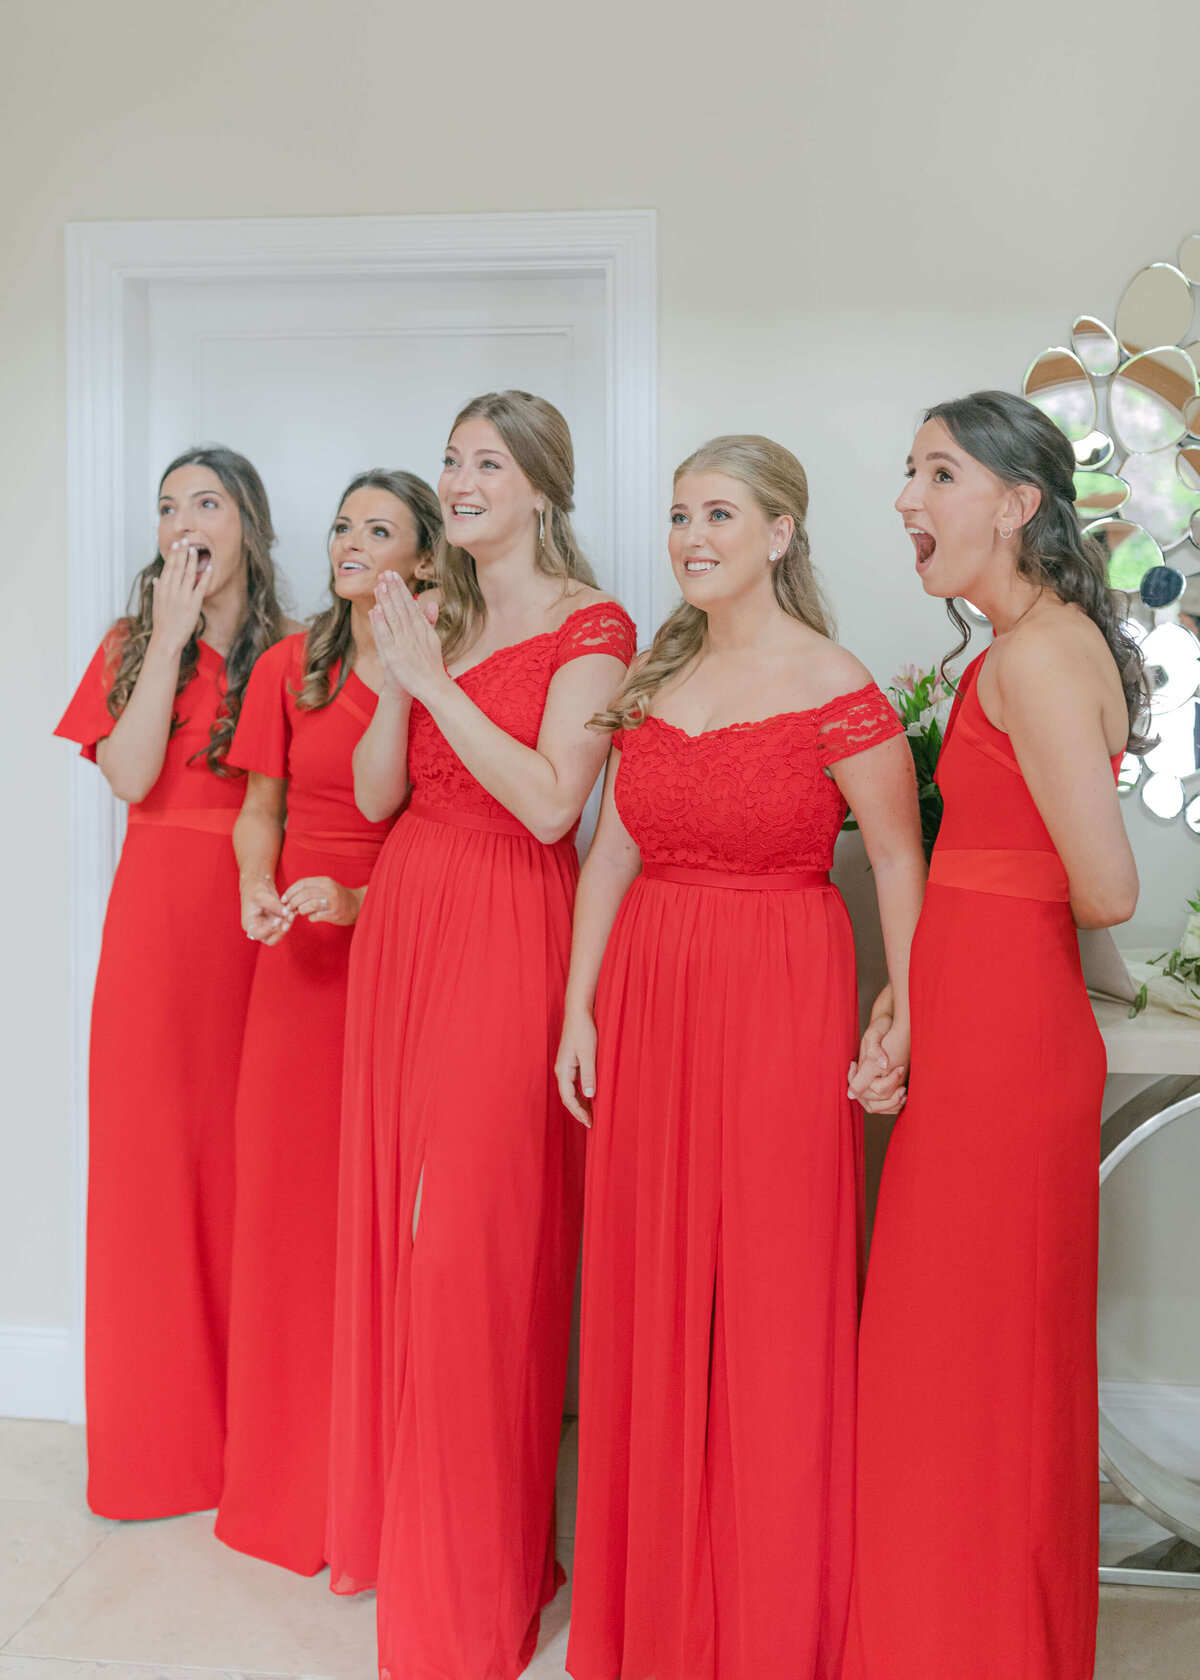 chloe-winstanley-weddings-first-look-bridesmaids